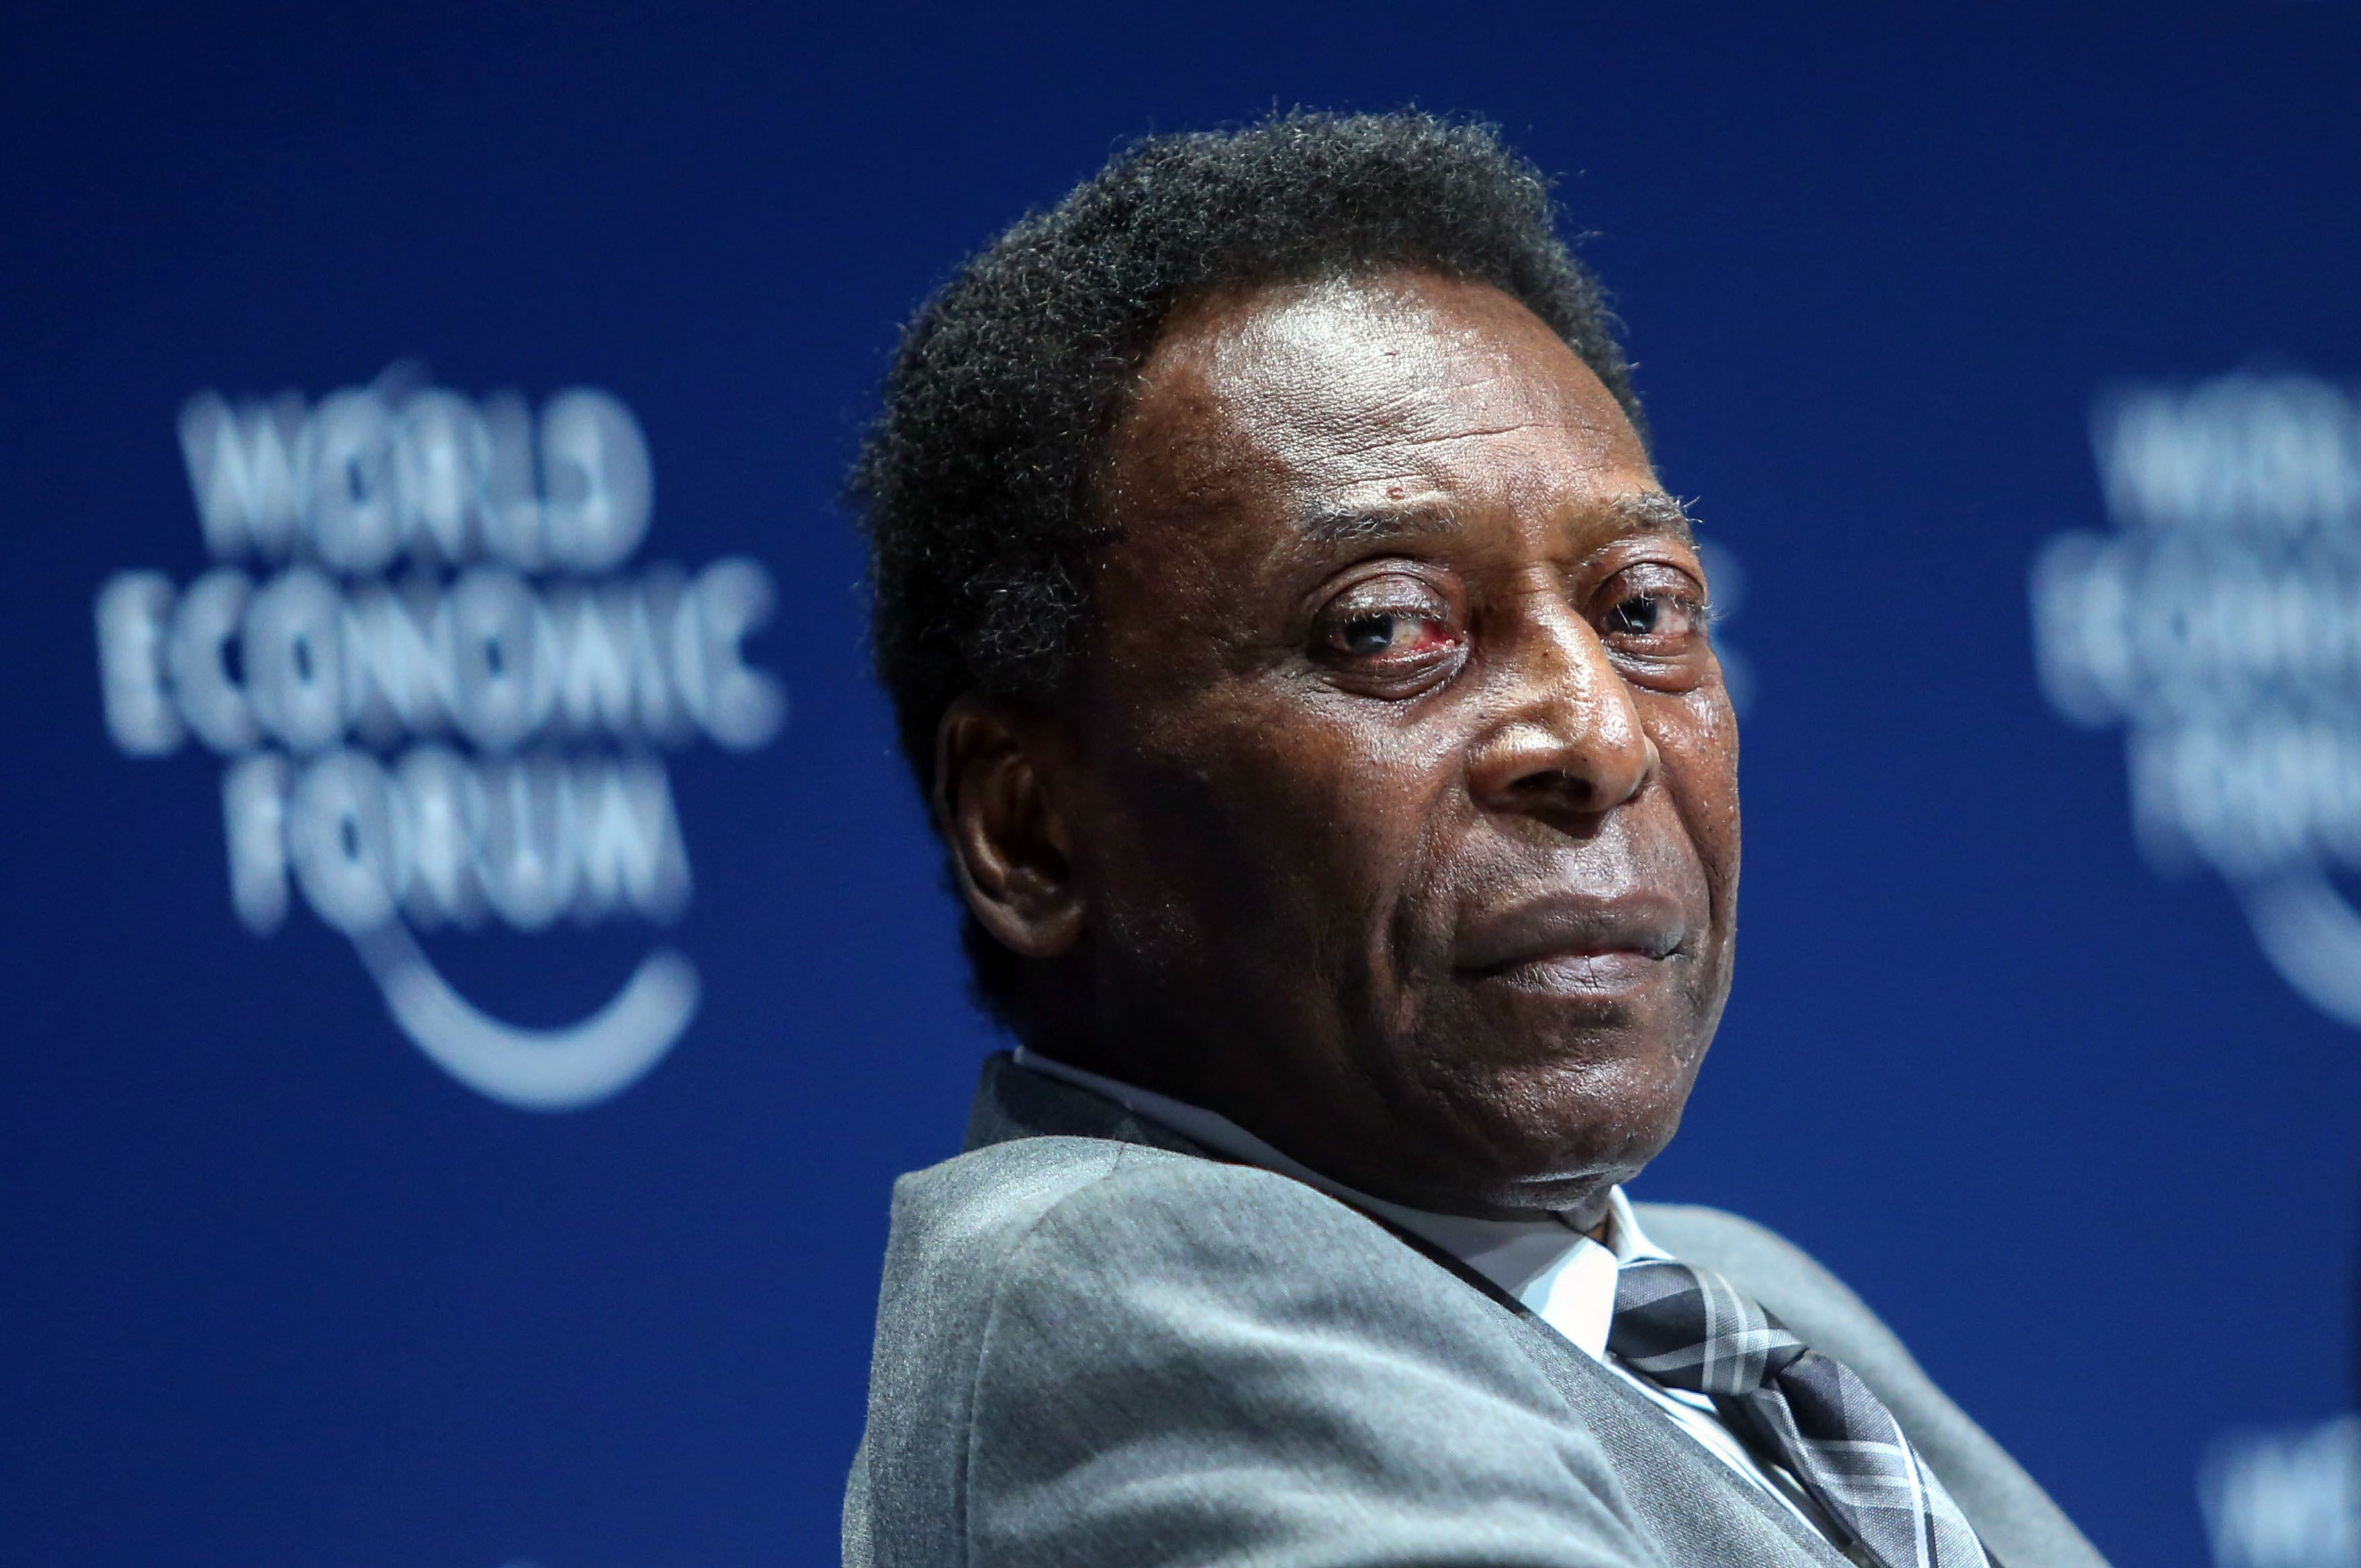 Még nem lélegezhetünk fel – Pelé kórházban marad